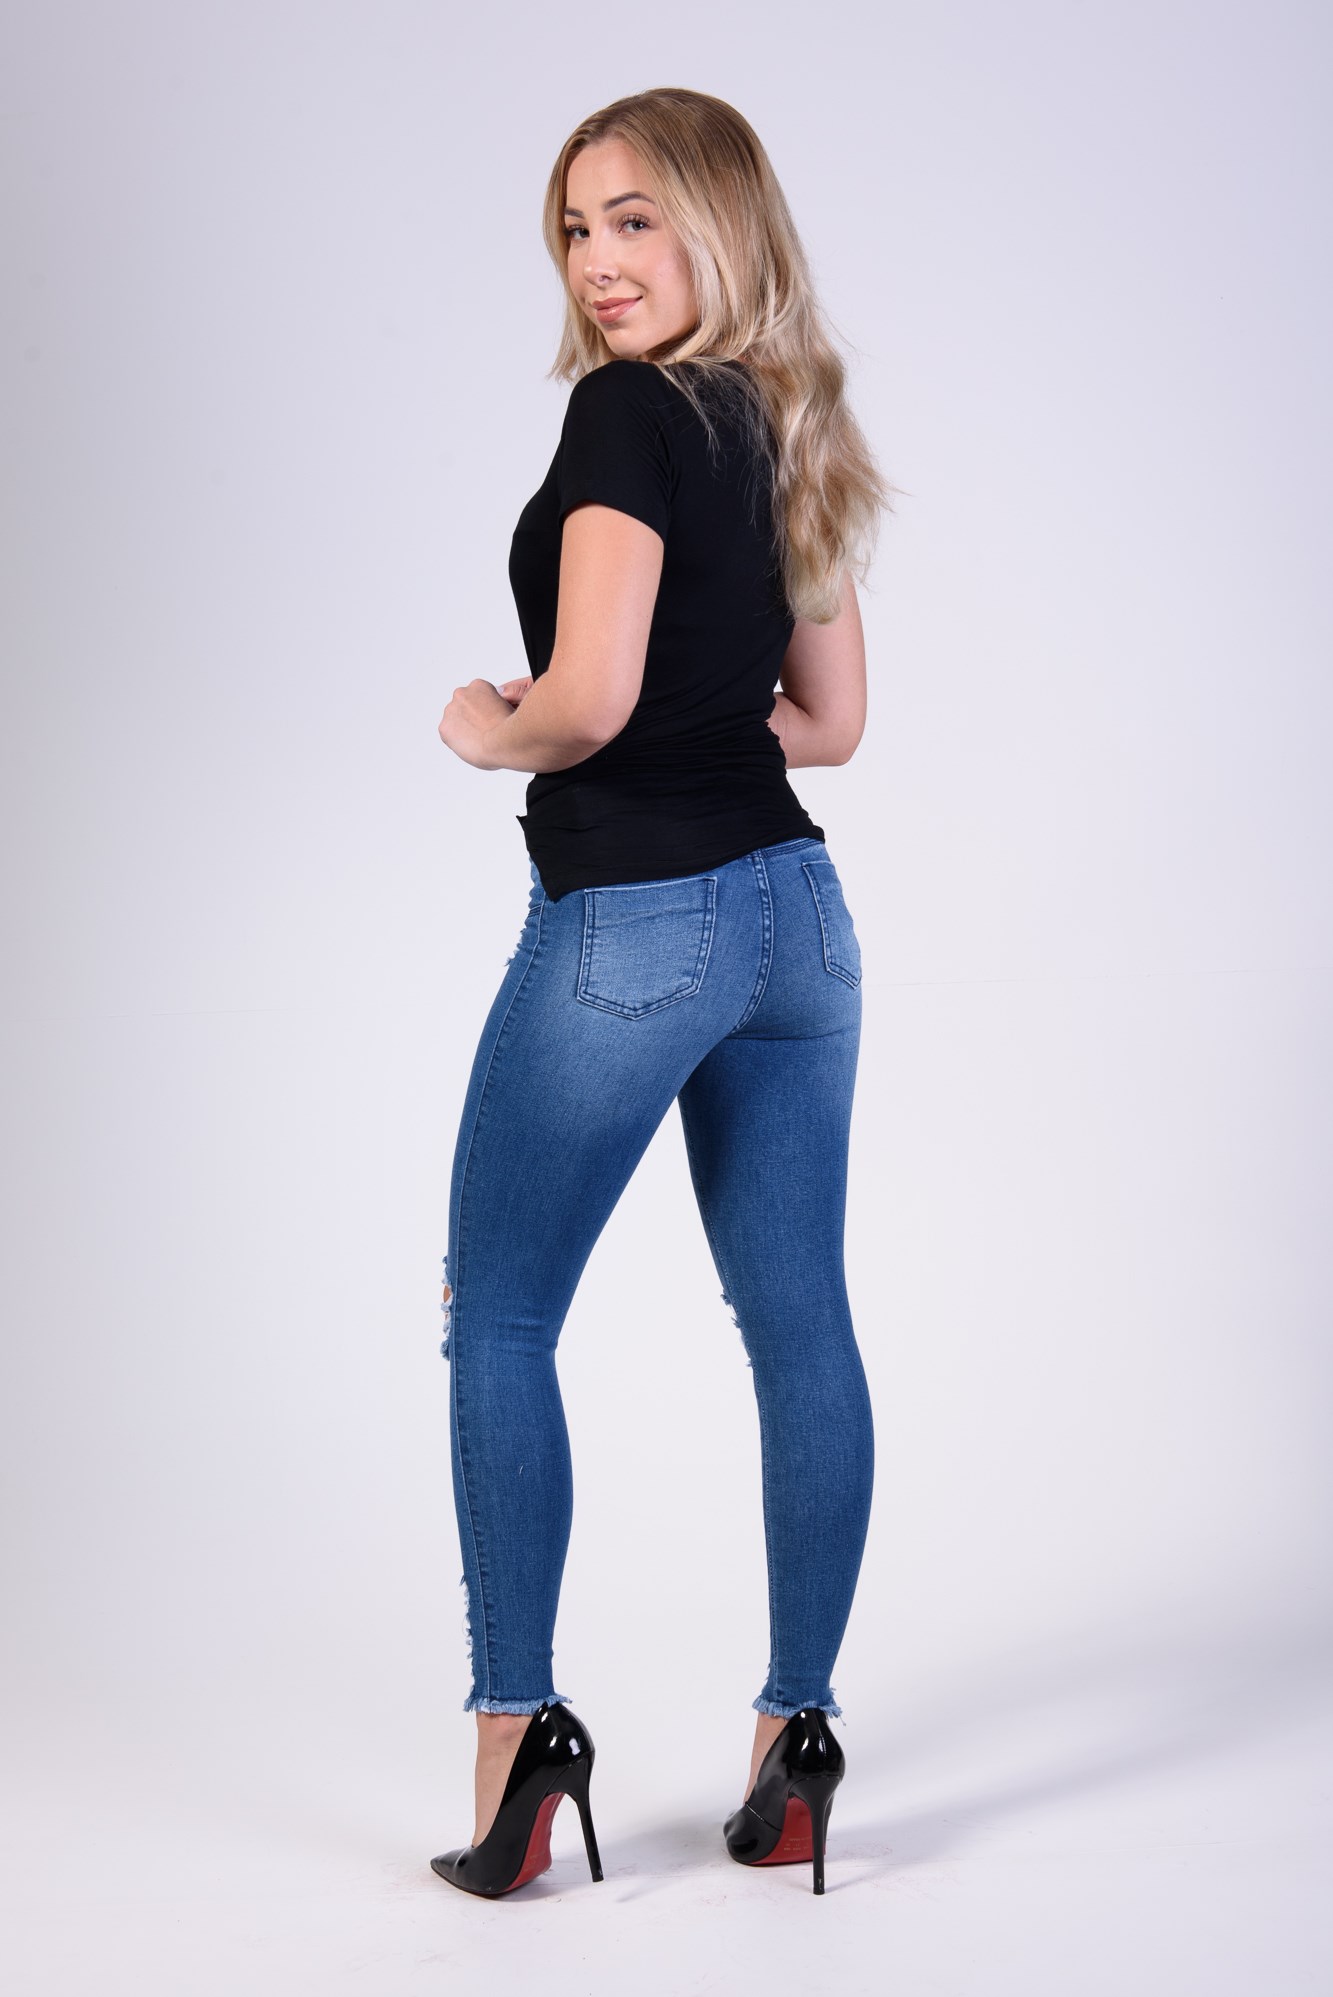 Calça Jeans Modeladora Perfeita com Cinto REF:1012 - Charmozare Jeans